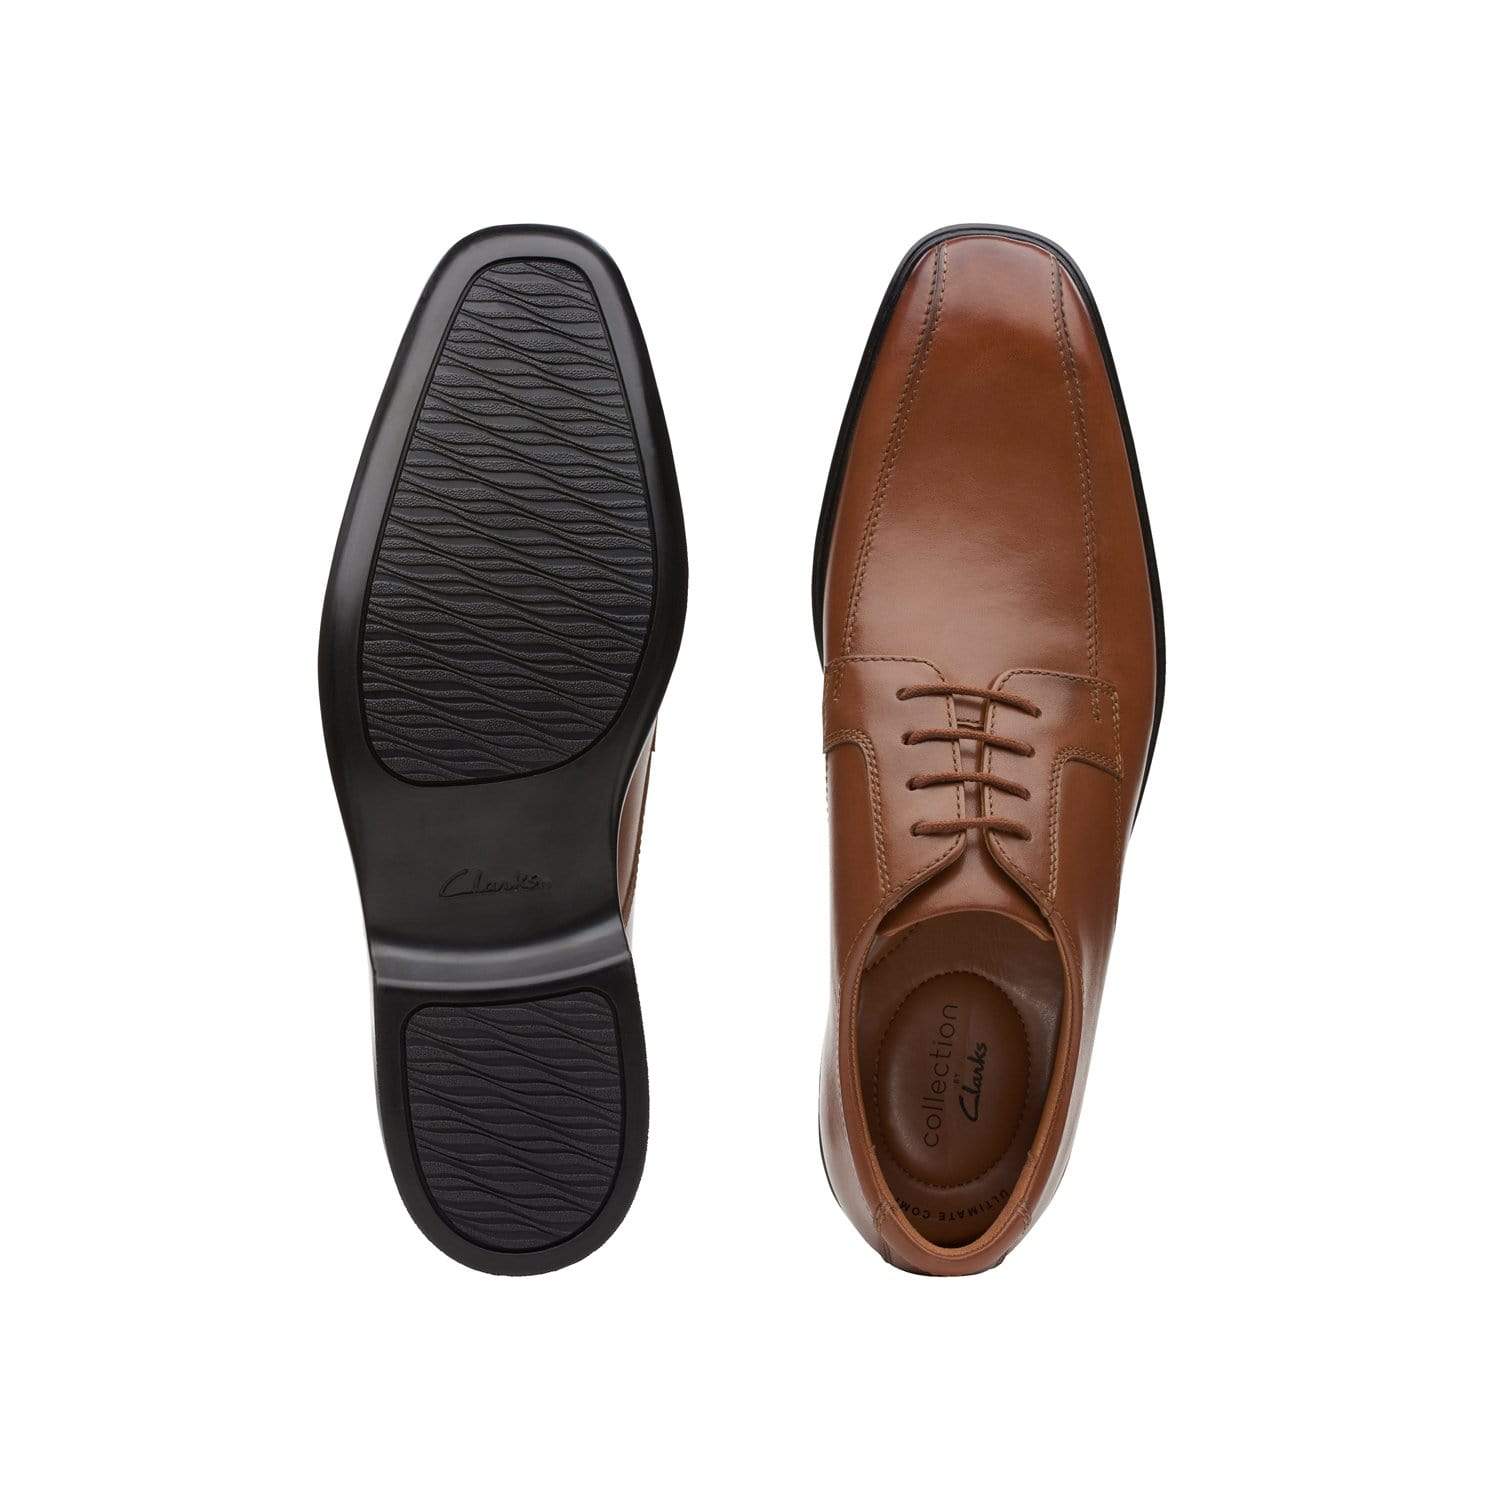 clarks-bensley-تشغيل الأحذية-الظلام-تان-الجلد-26149615-h-عرض واسعة تناسب